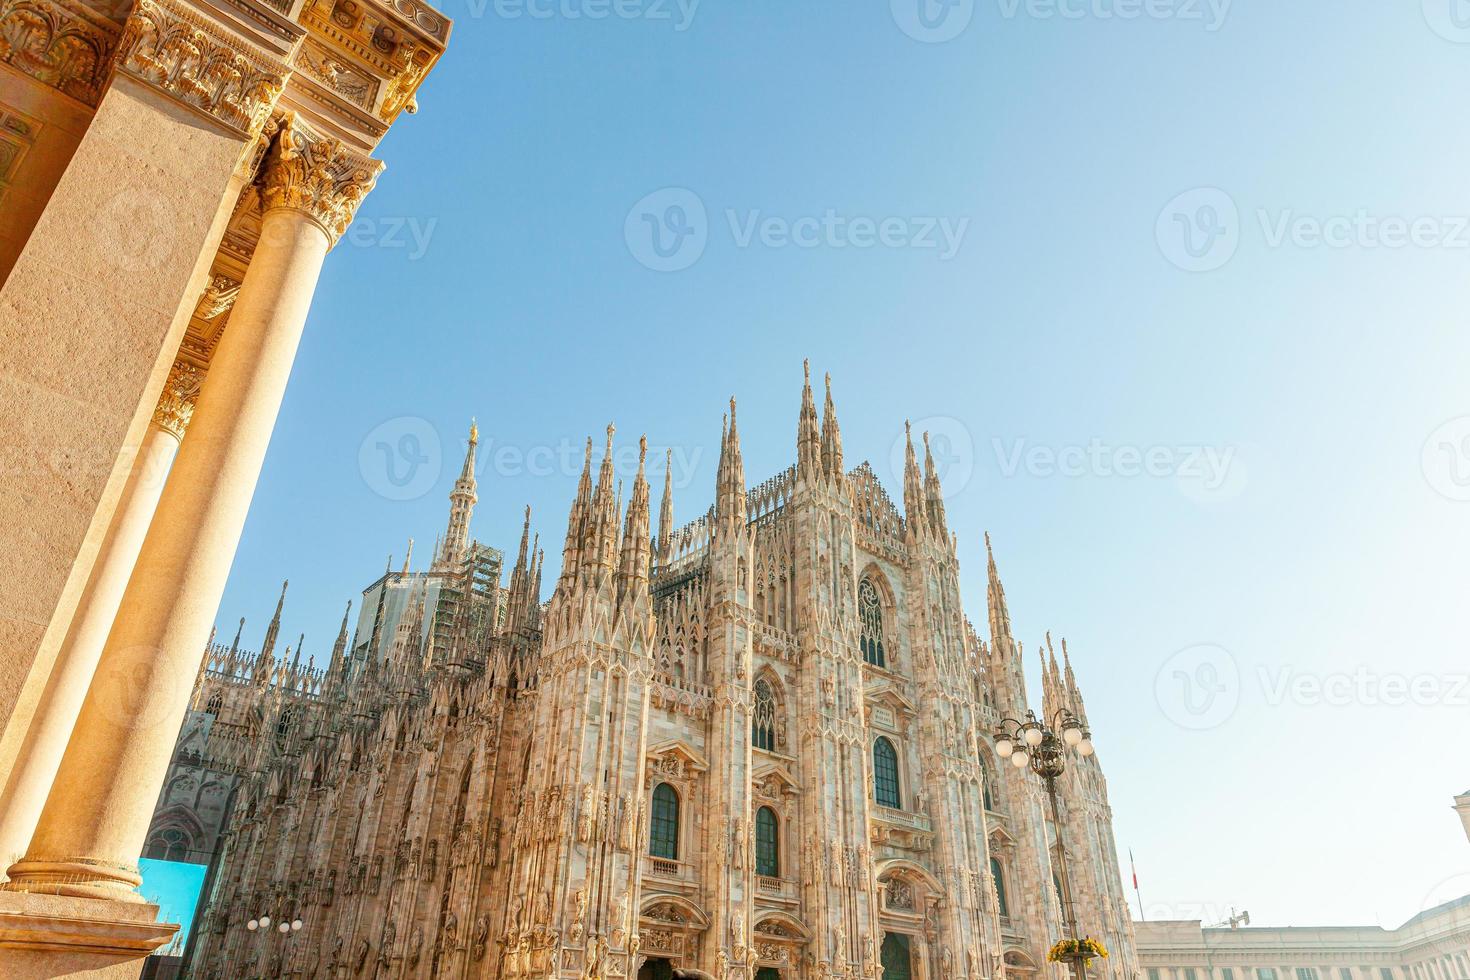 berühmte kirche mailänder kathedrale duomo di milano mit gotischen spitzen und weißen marmorstatuen. Top-Touristenattraktion auf der Piazza in Mailand Lombardei Italien. Weitwinkelansicht der alten gotischen Architektur und Kunst foto